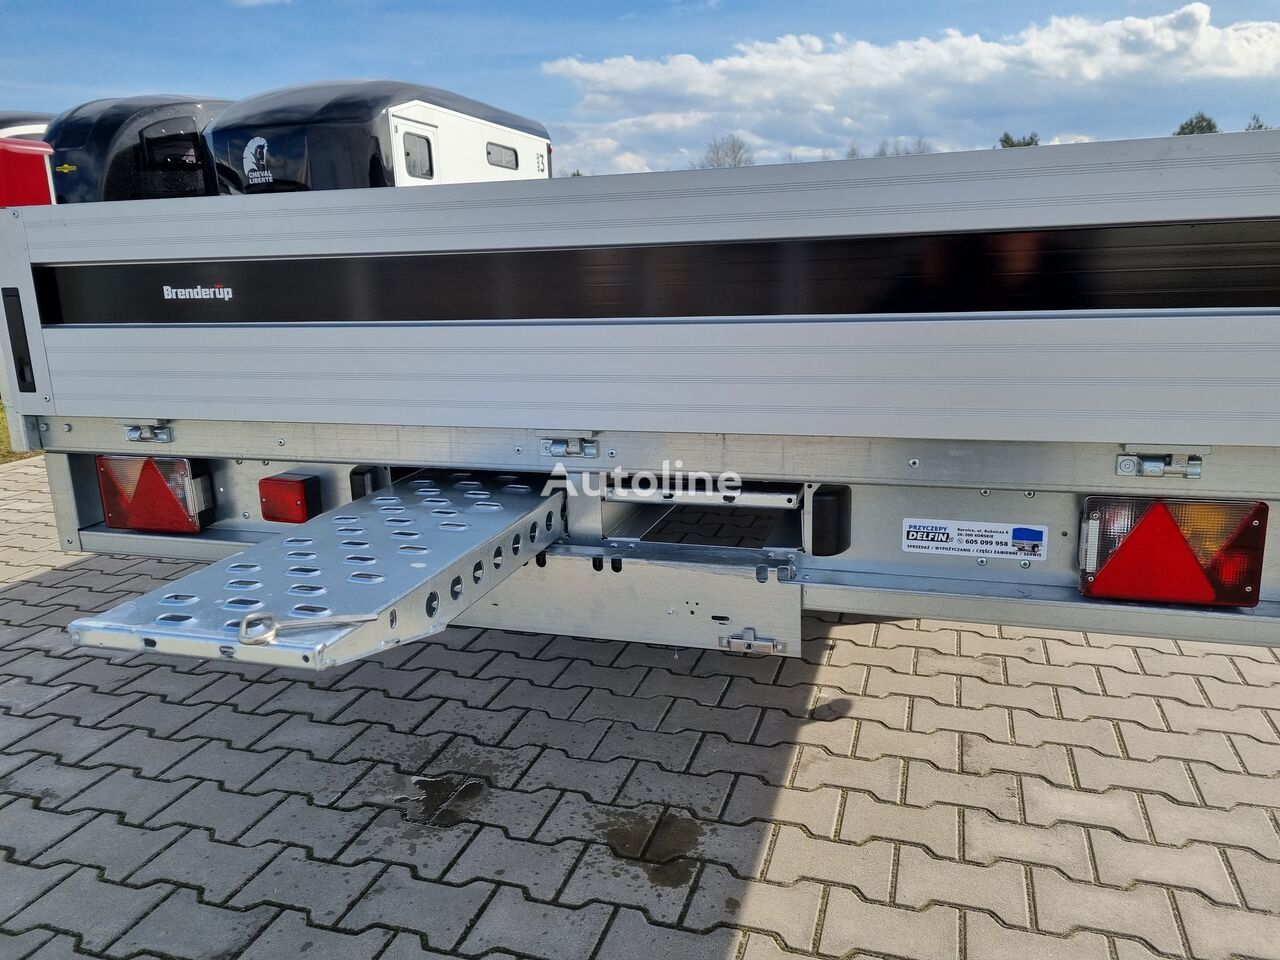 Nieuw Open/ Plateau aanhangwagen Brenderup 5520 WATB 3,5T GVW 517x204 cm 5m long trailer platform: afbeelding 22